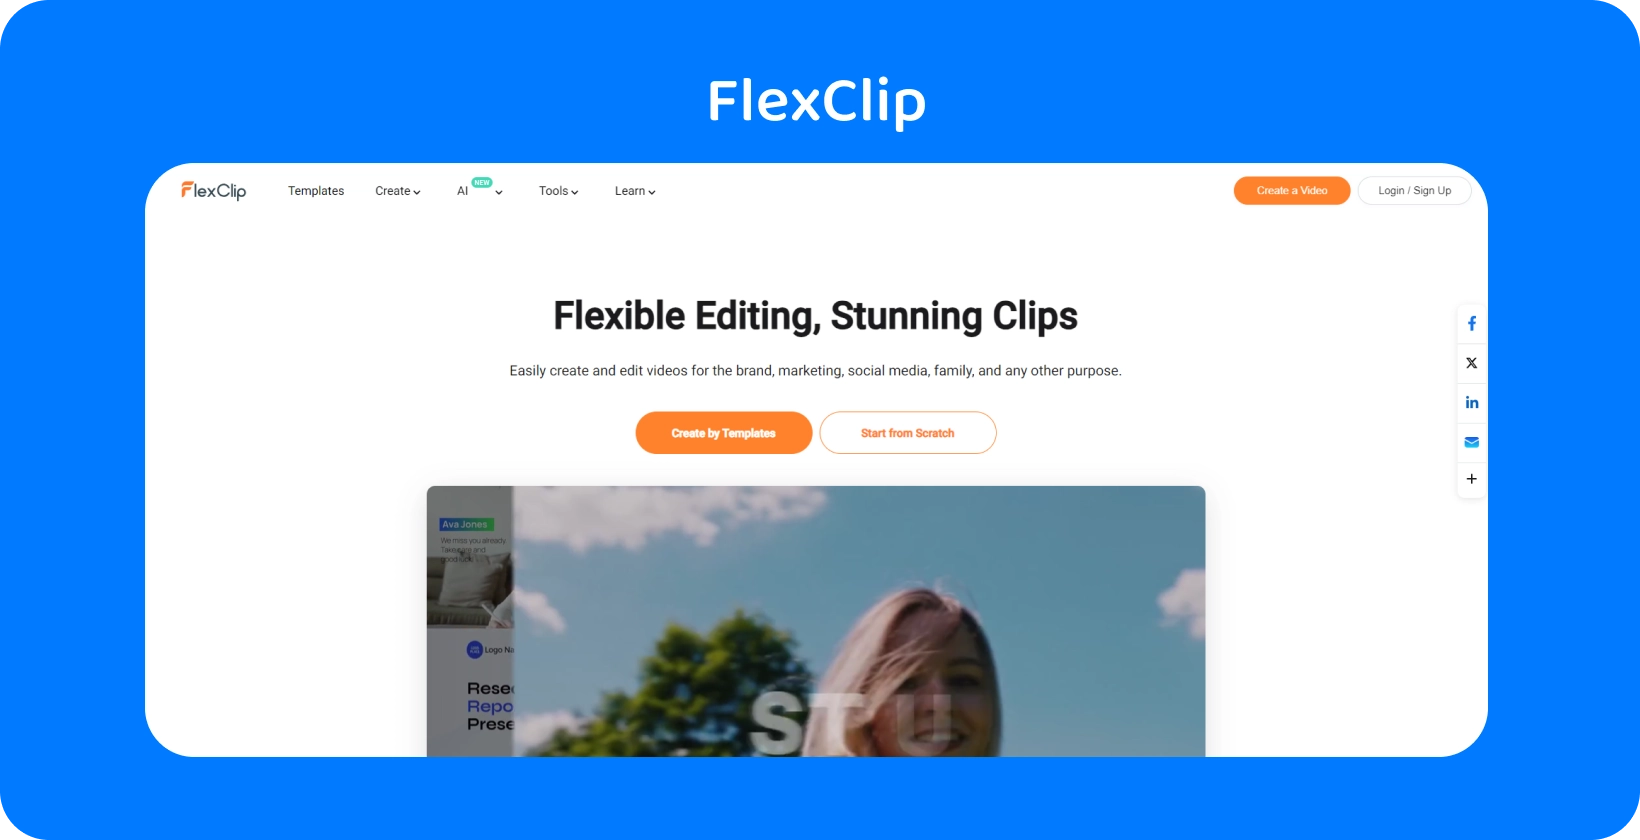 L'interfaccia Text to Speech Video Maker di FlexClip mostra un modo semplice ed efficiente per convertire il testo in AI vocale realistico.